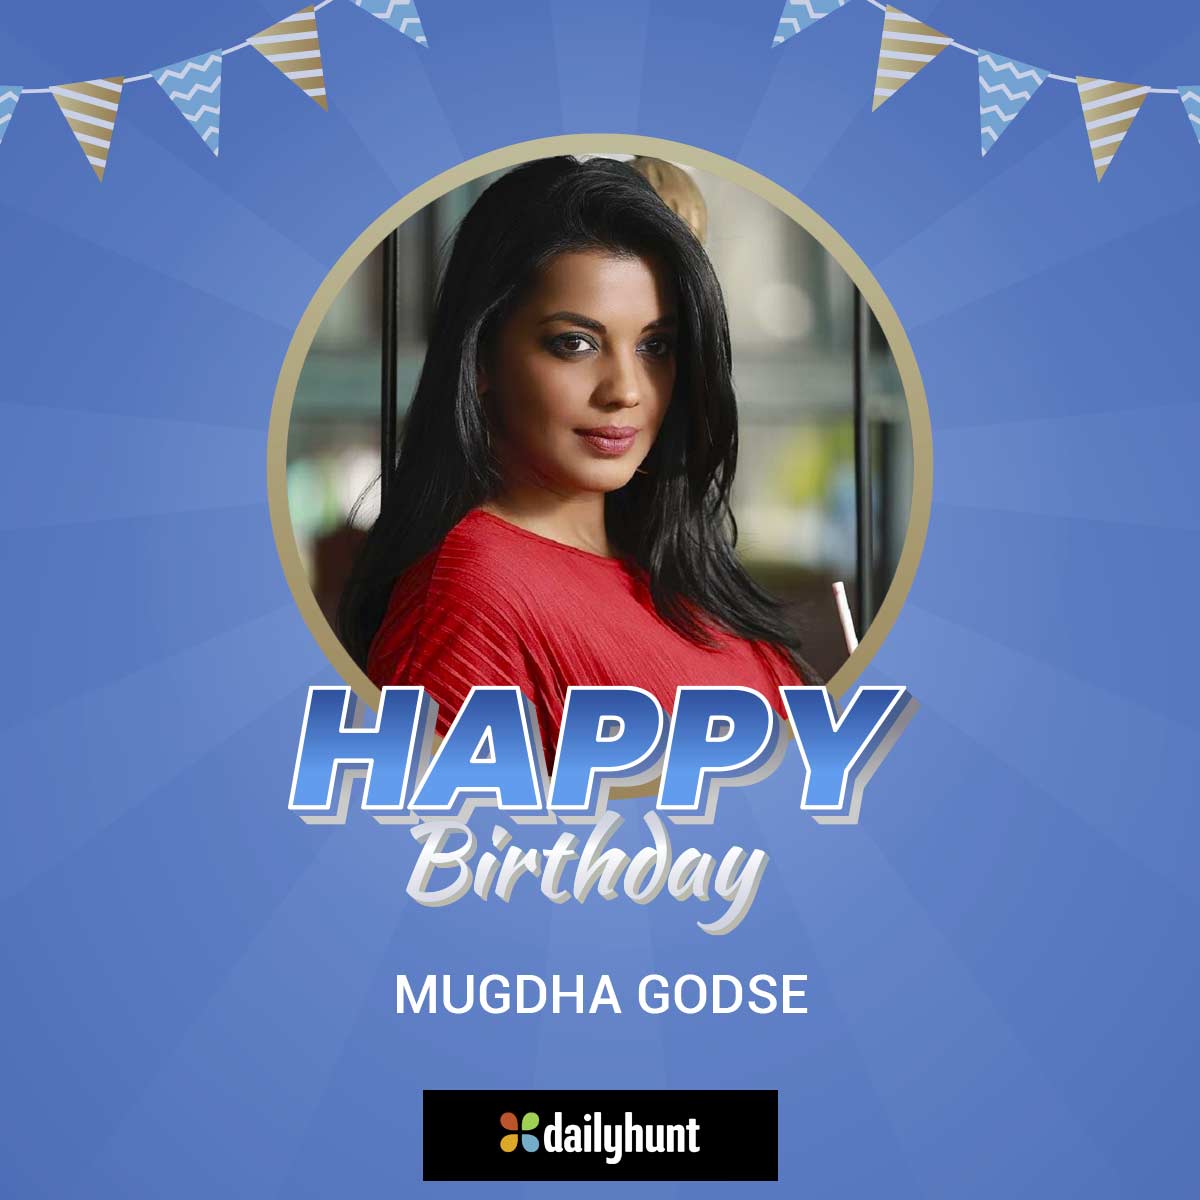 ਜਨਮਦਿਨ ਮੁਬਾਰਕ...✨🎂🎁🎈💕
@mugdhagodse267
#HappyBirthday #mugdhagodse #HBDmugdhagodse #mugdhagodseBirthday #Dailyhunt #Birthday #HappyBirthdaymugdhagodse